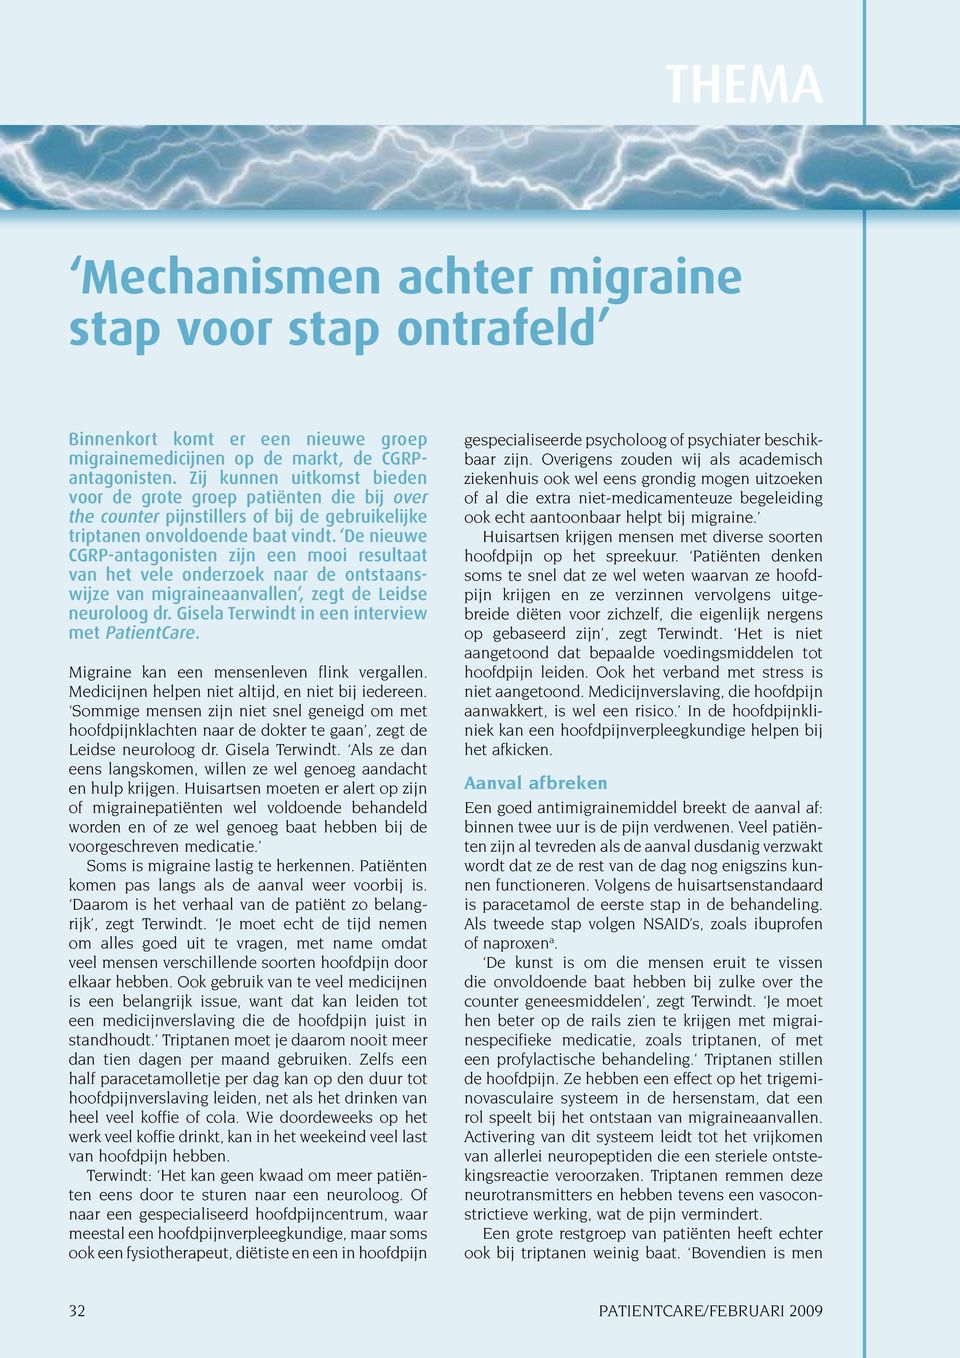 De nieuwe CGRP-antagonisten zijn een mooi resultaat van het vele onderzoek naar de ontstaanswijze van migraineaanvallen, zegt de Leidse neuroloog dr. Gisela Terwindt in een interview met PatientCare.